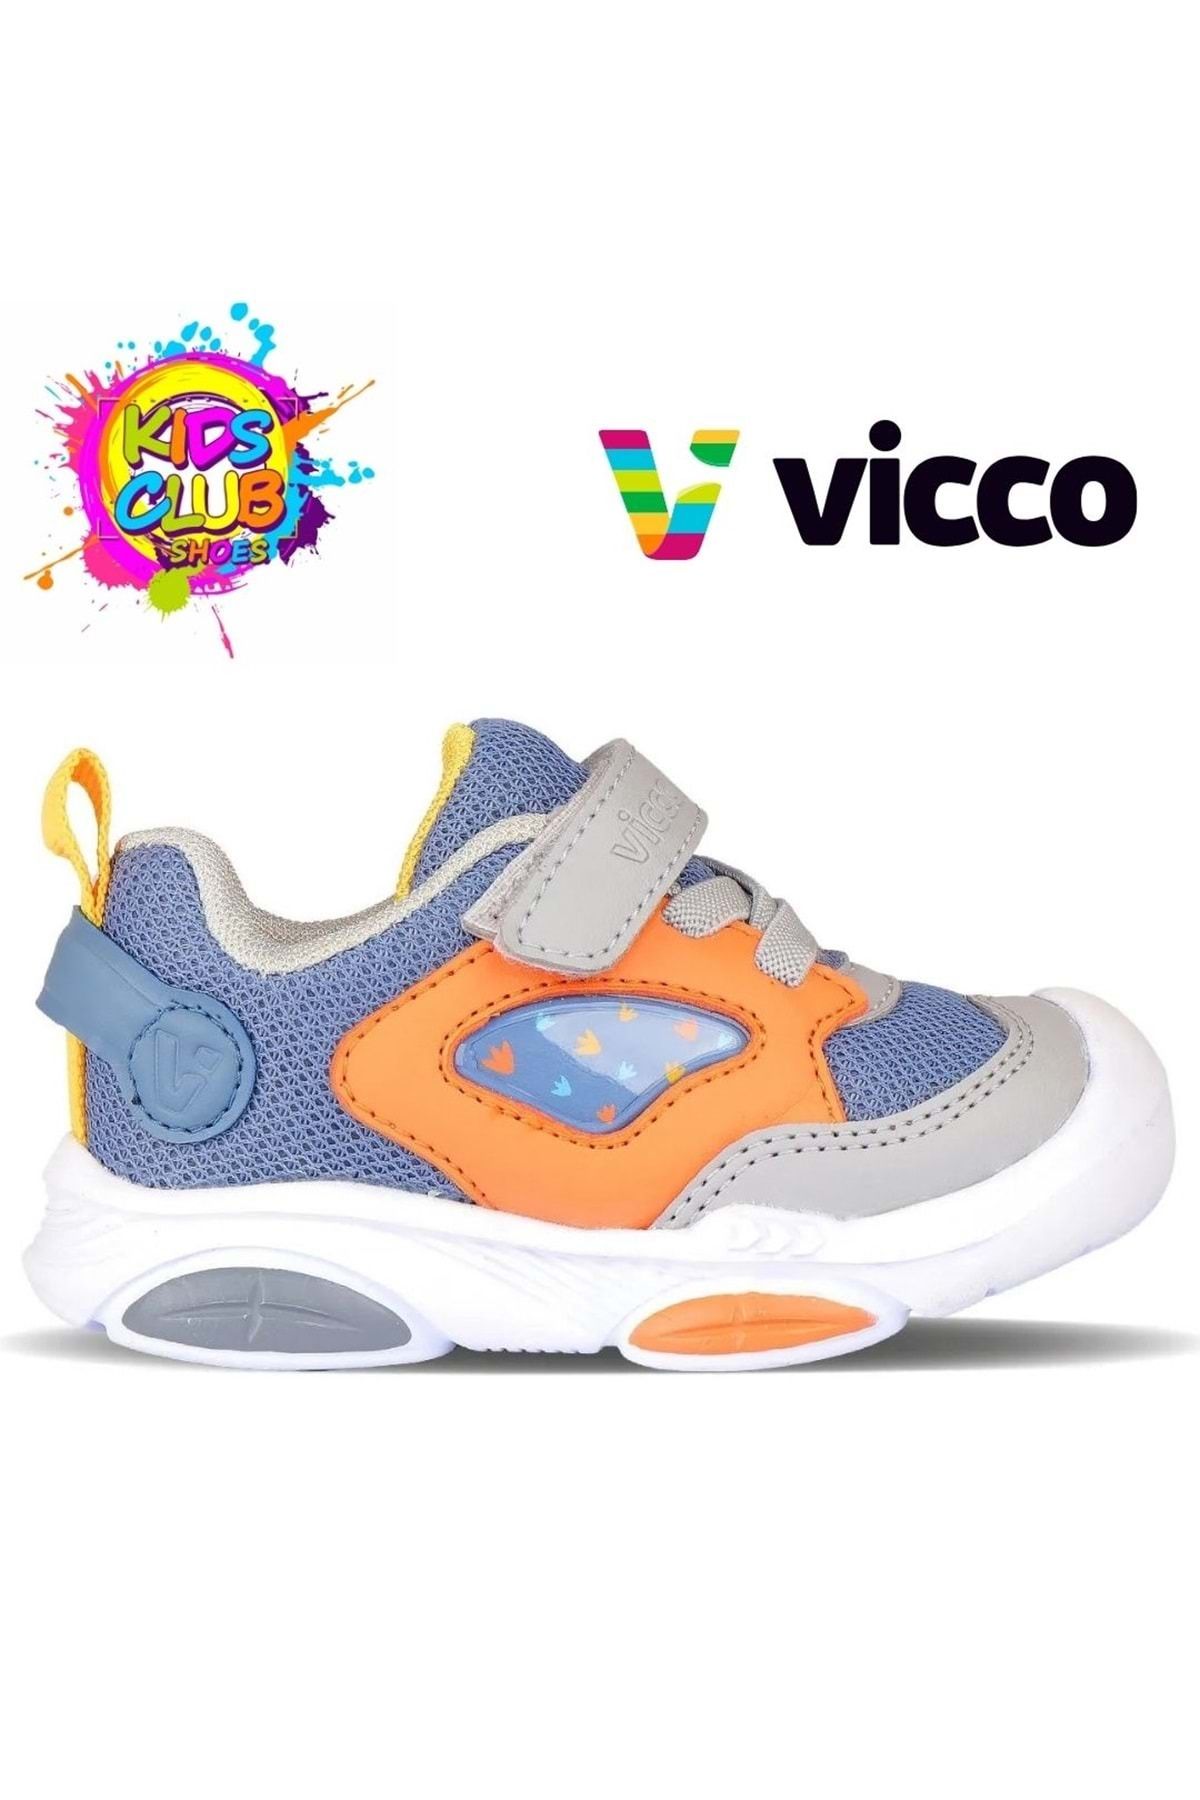 Kids Club Shoes Vicco Pekin İlk Adım Bebek Ortopedik Çocuk Spor Ayakkabı KOT